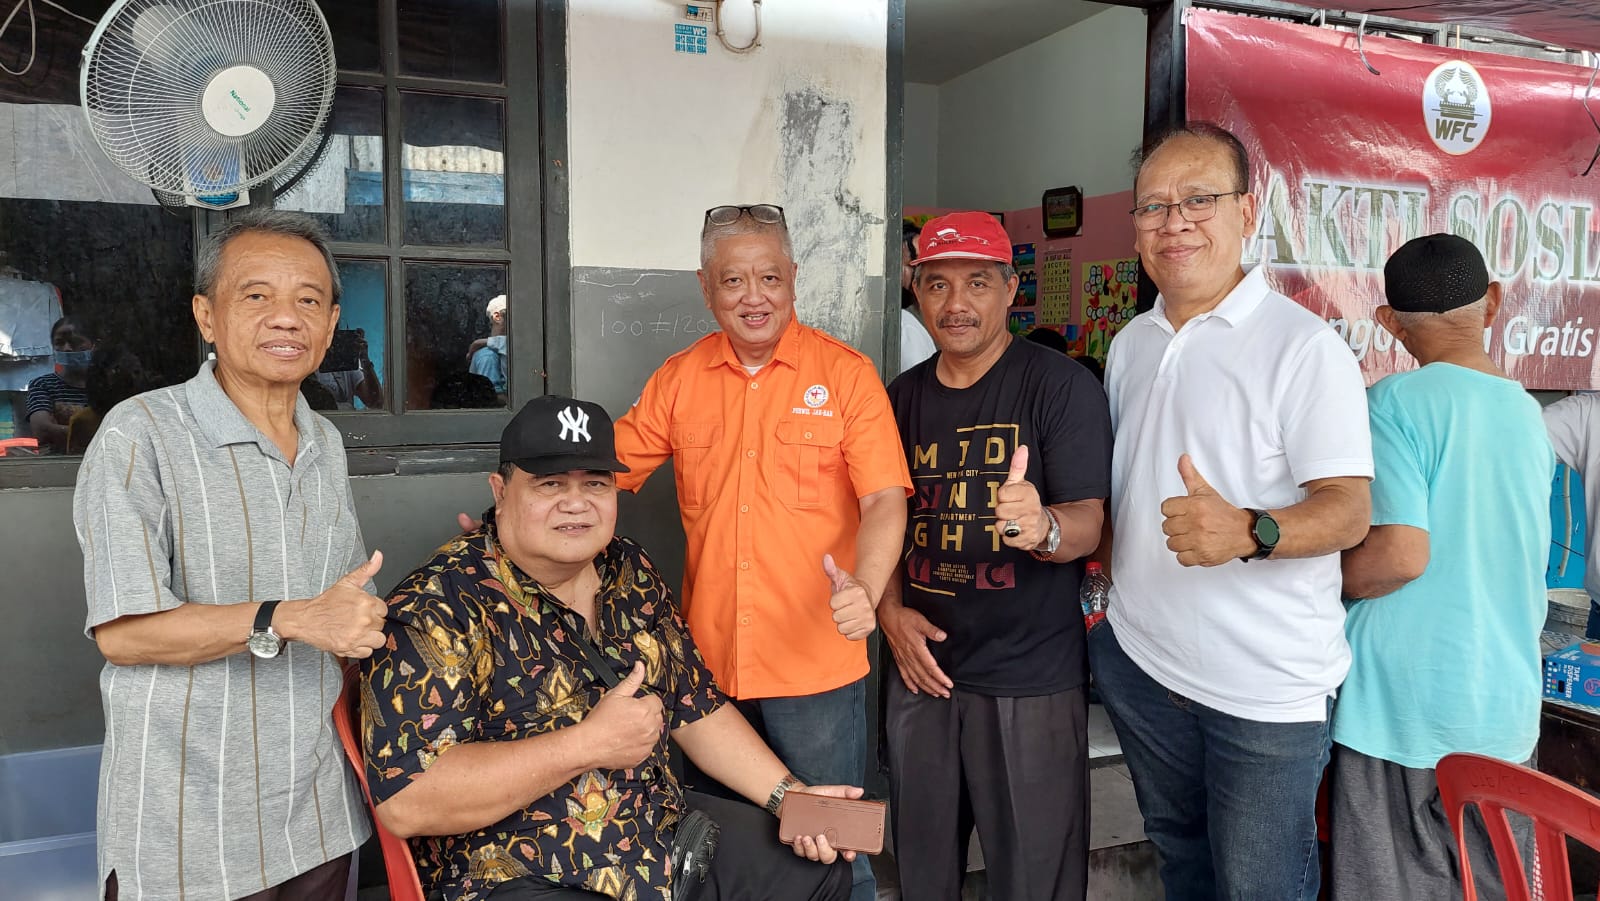 Bakti Sosial Pengobatan Gratis Perwil Jakarta Barat Bersama GBI WFC